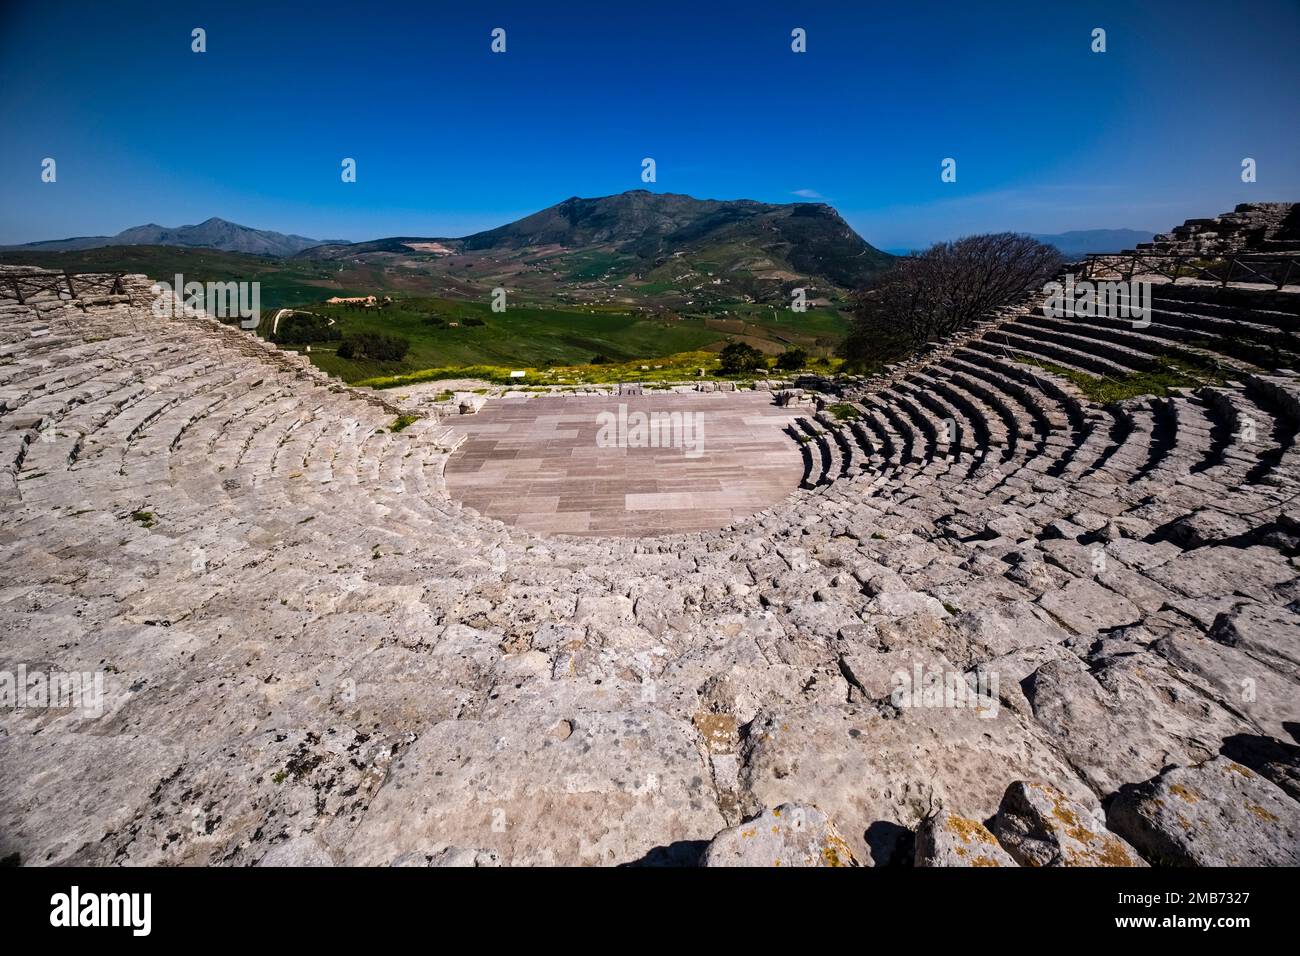 El teatro griego de Segesta, una ruina preservada de un Elímico de 2500 años de antigüedad y más tarde asentamiento griego en el noroeste de Sicilia. Foto de stock